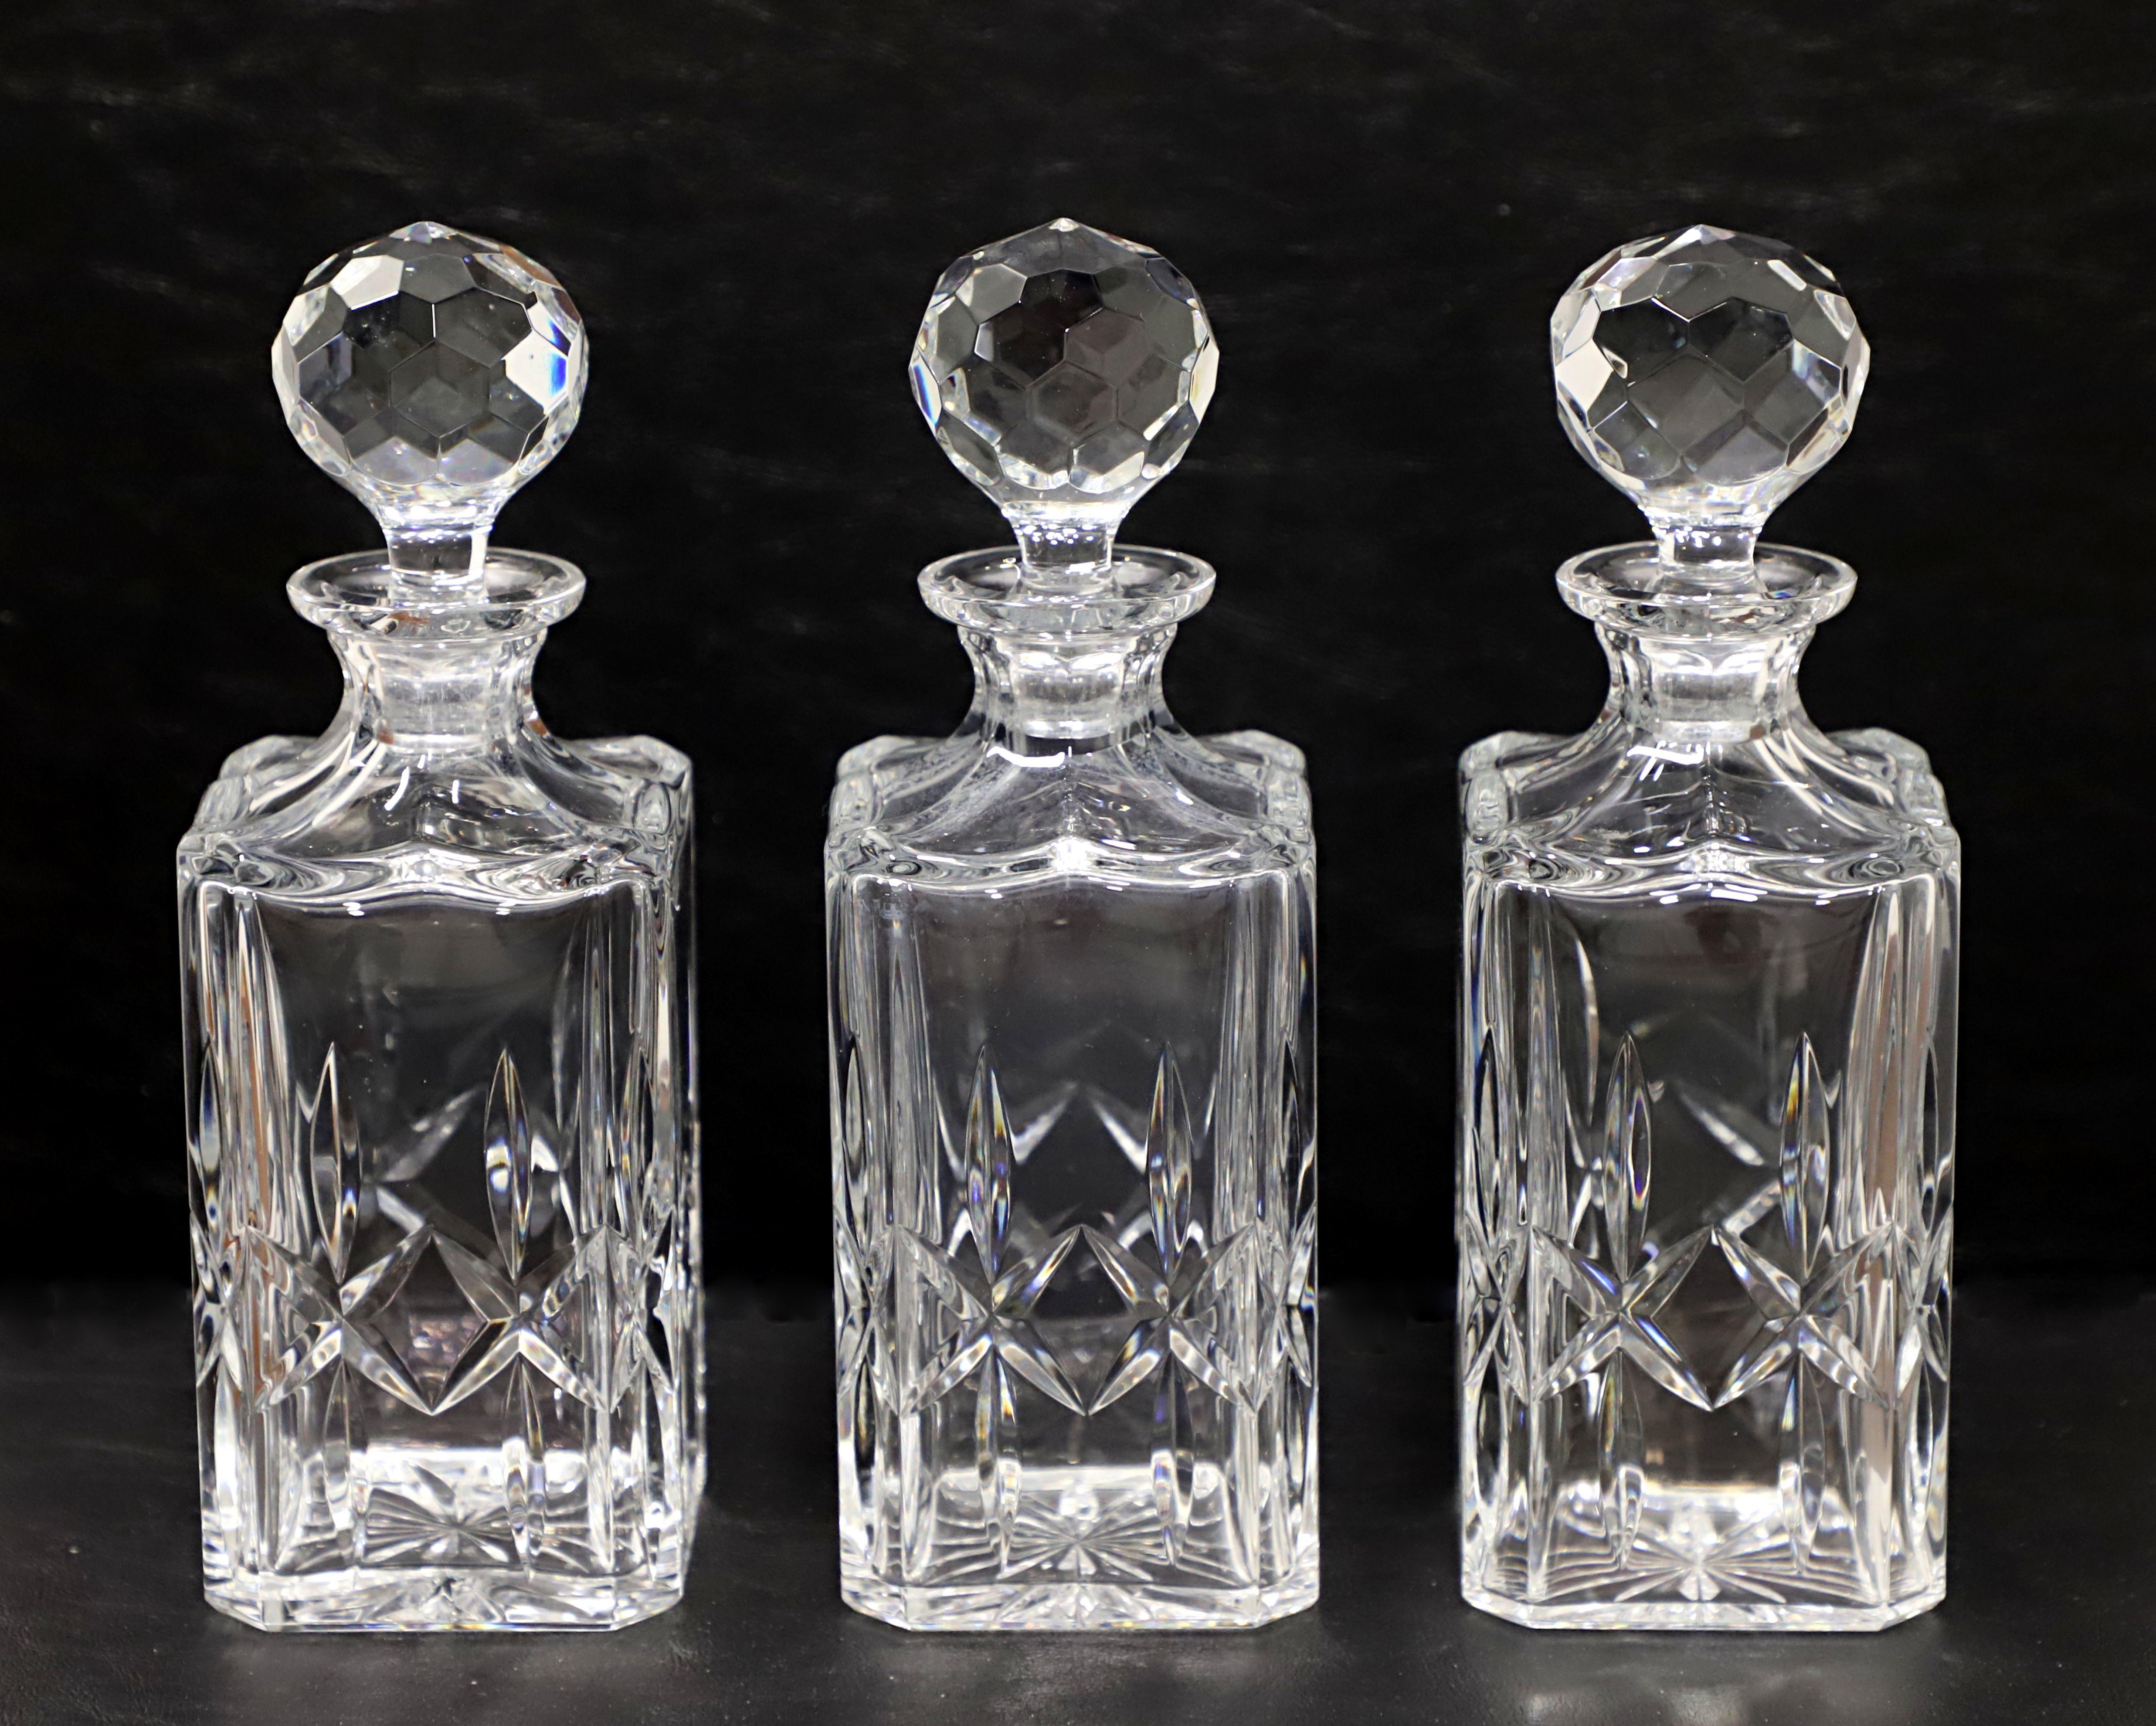 Un trio de carafes en cristal de la fin du 20e siècle par Atlantis Cristasia. Carafes en cristal de plomb clair, de forme carrée, avec le même motif de diamant taillé sur chacune d'elles. Bouchon en cristal de forme ronde et bulleuse. Fabriqué à